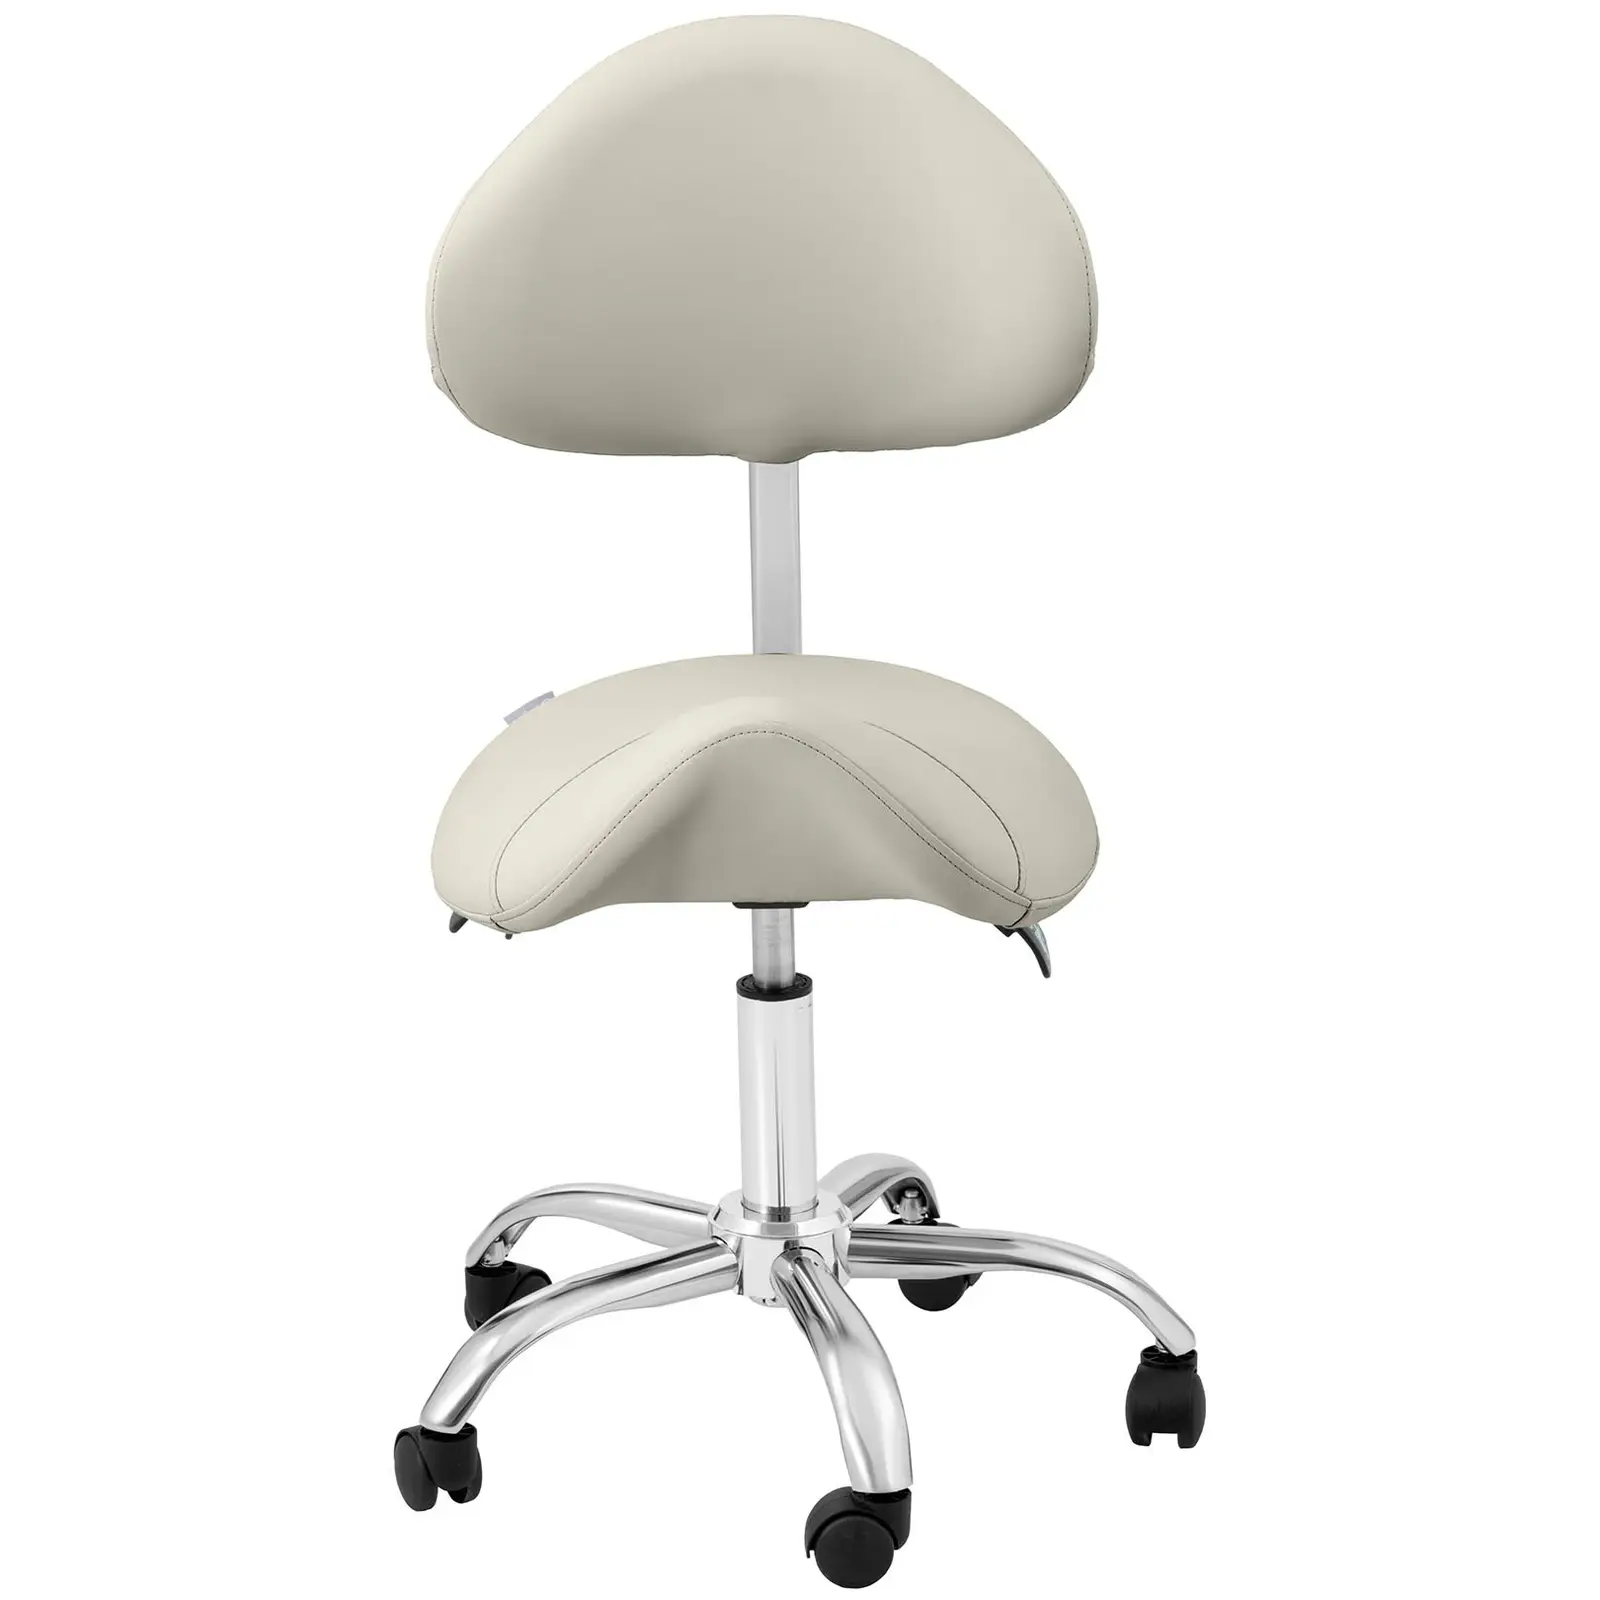 Krzesło siodłowe - oparcie i siedzisko z regulacją wysokości - 55-69 cm - 150 kg - szare, srebrne